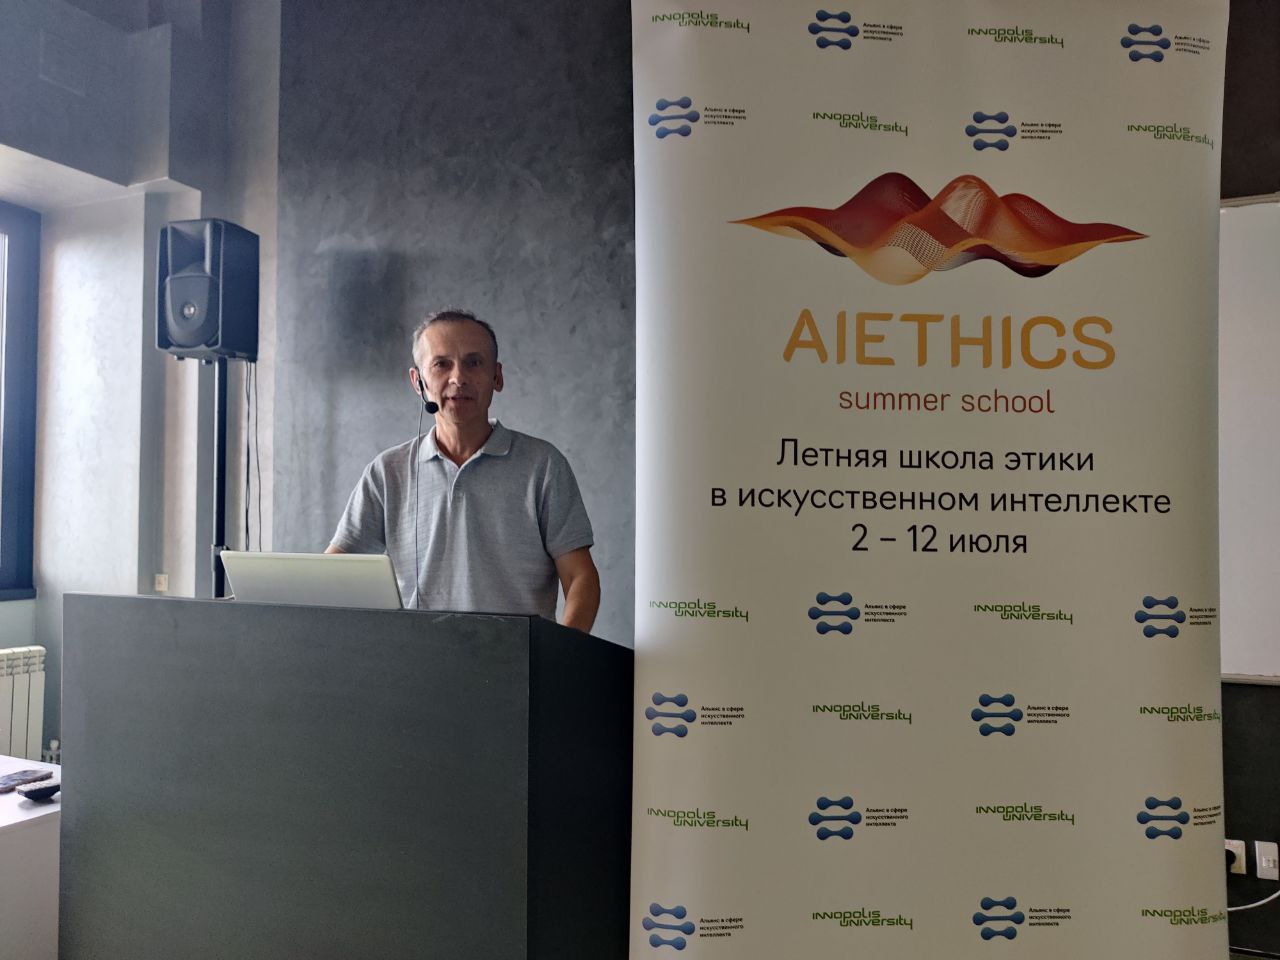 Center participates in the AI Ethics Summer School at Innopolis University